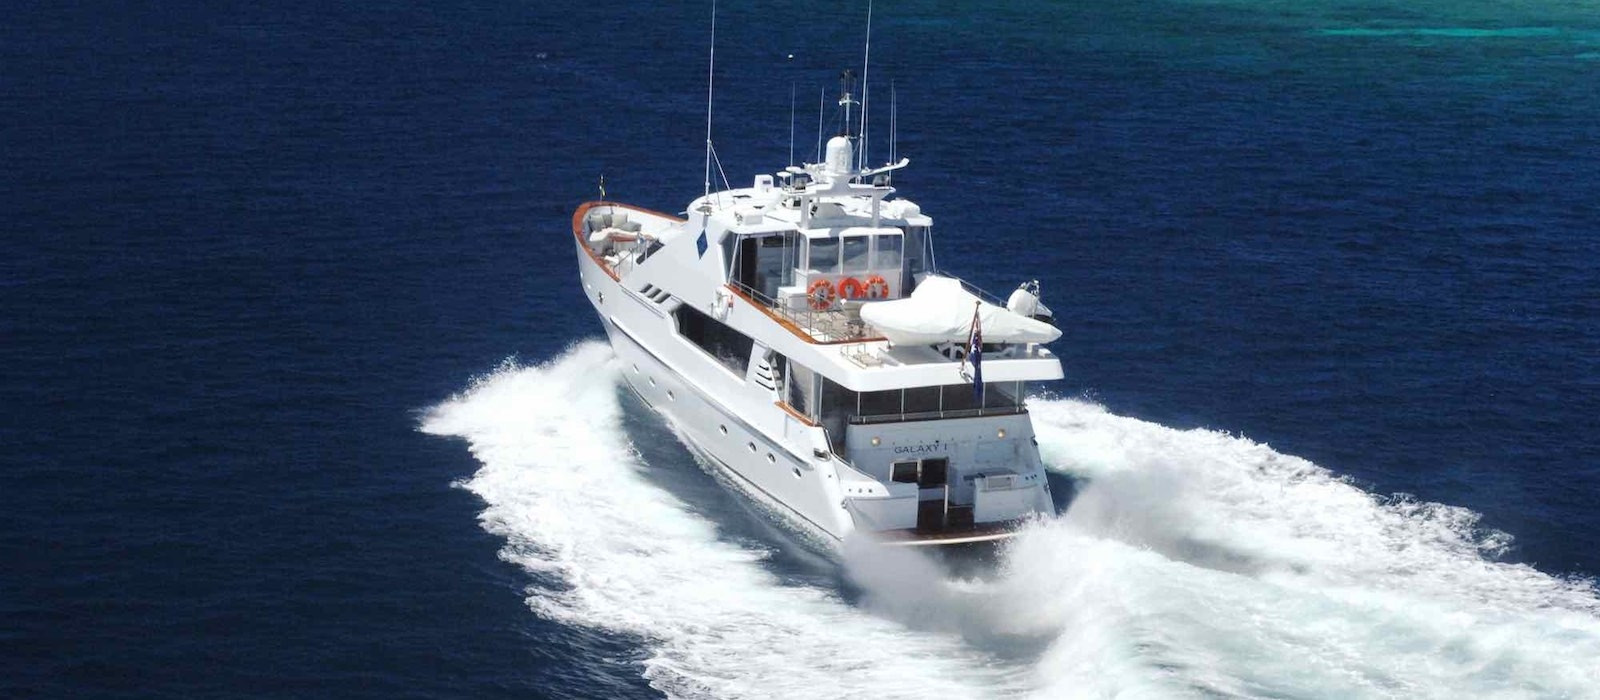 Galaxy I luxury boat hire Whitsundays 